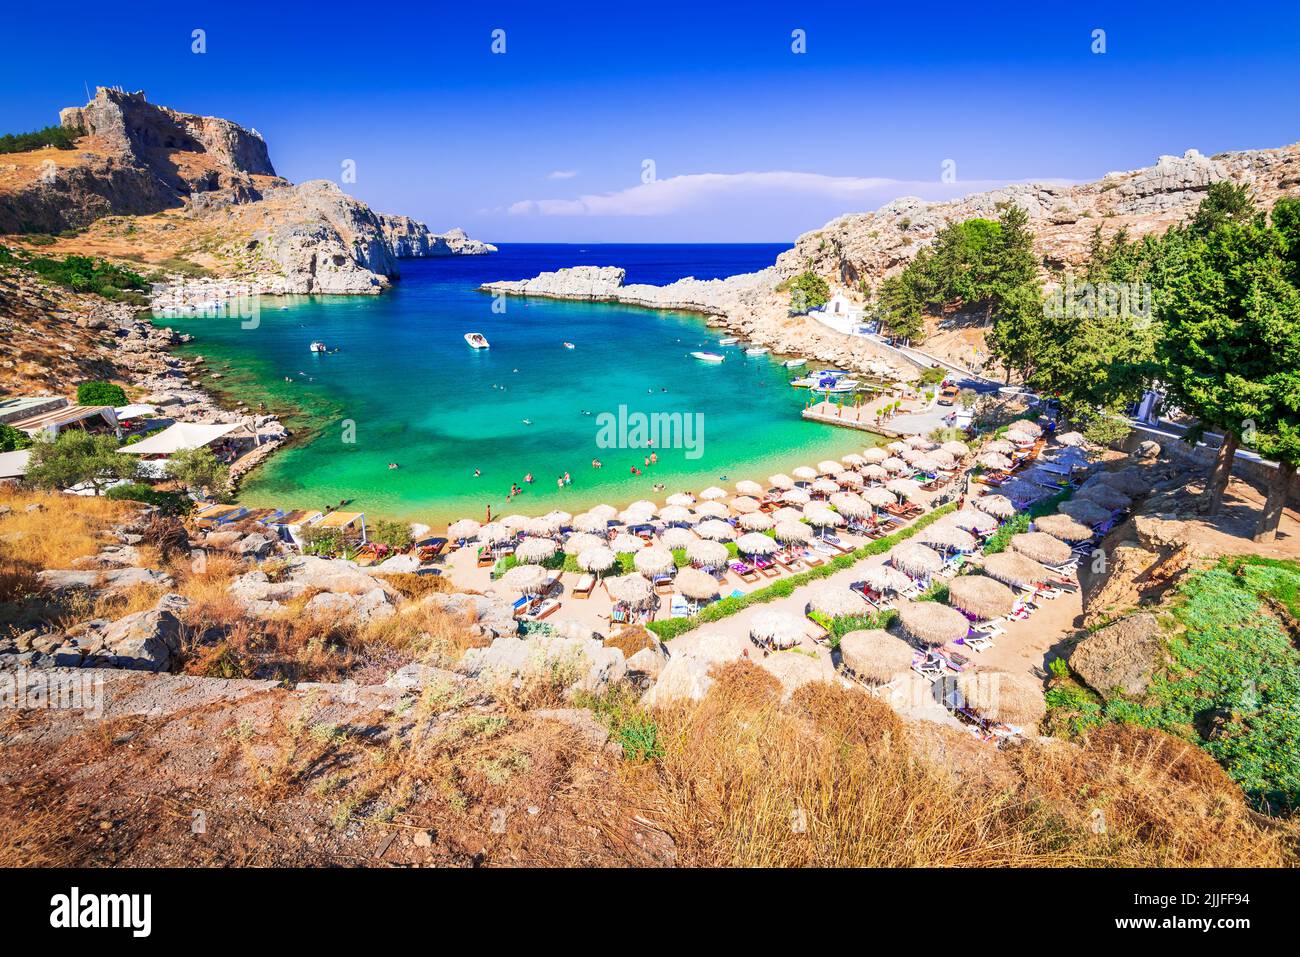 Rhodes, Grèce. Baie de Saint Paul, paysage de la mer Égée avec l'ancienne ville de Lindos et les ruines rocheuses de l'Acropole. Banque D'Images